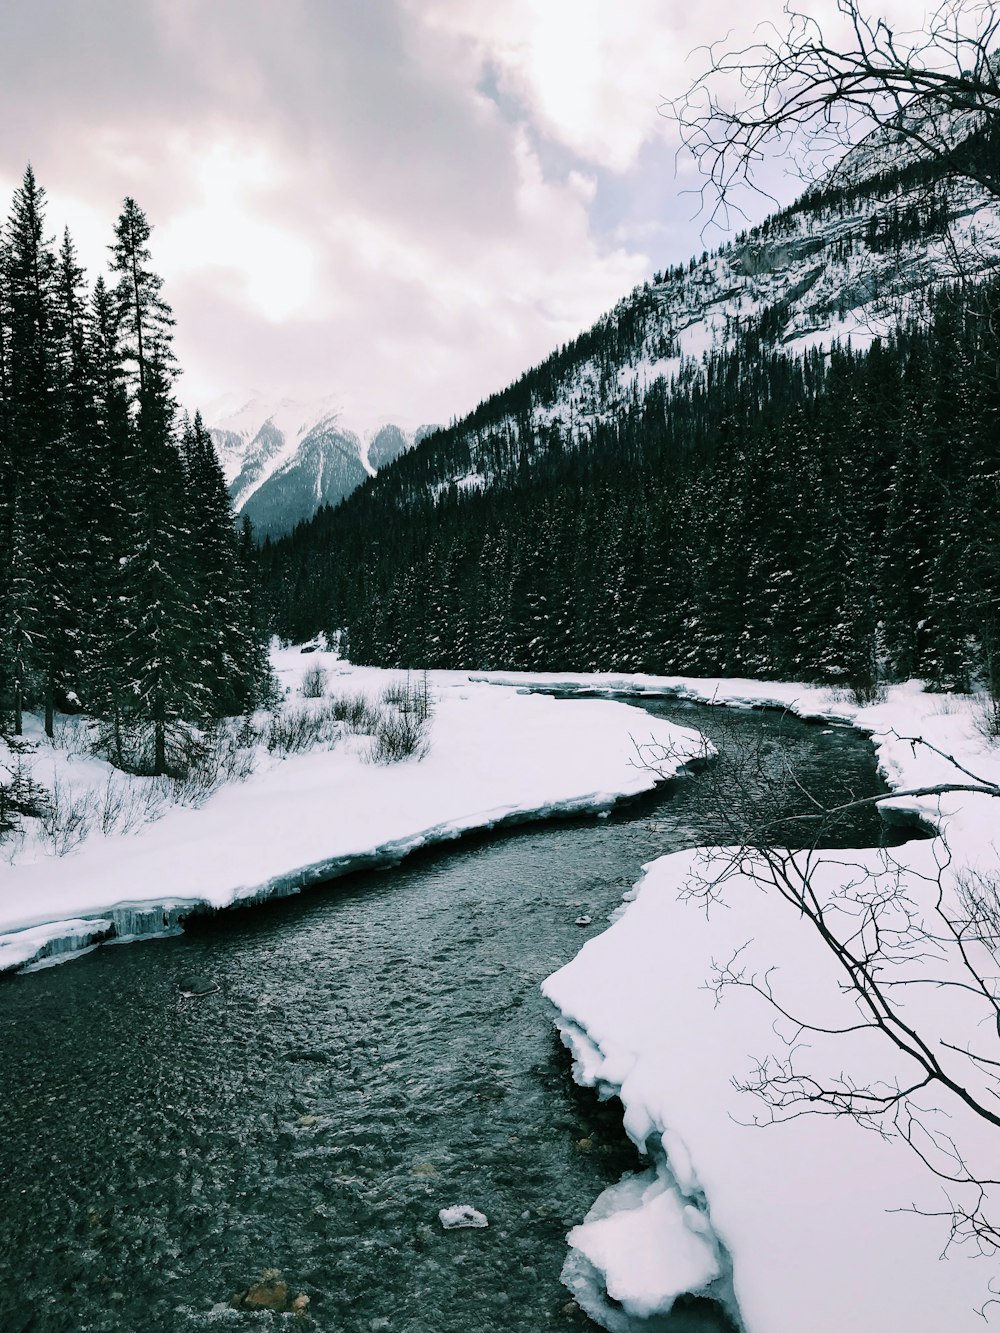 rivière entre les arbres couverts de neige